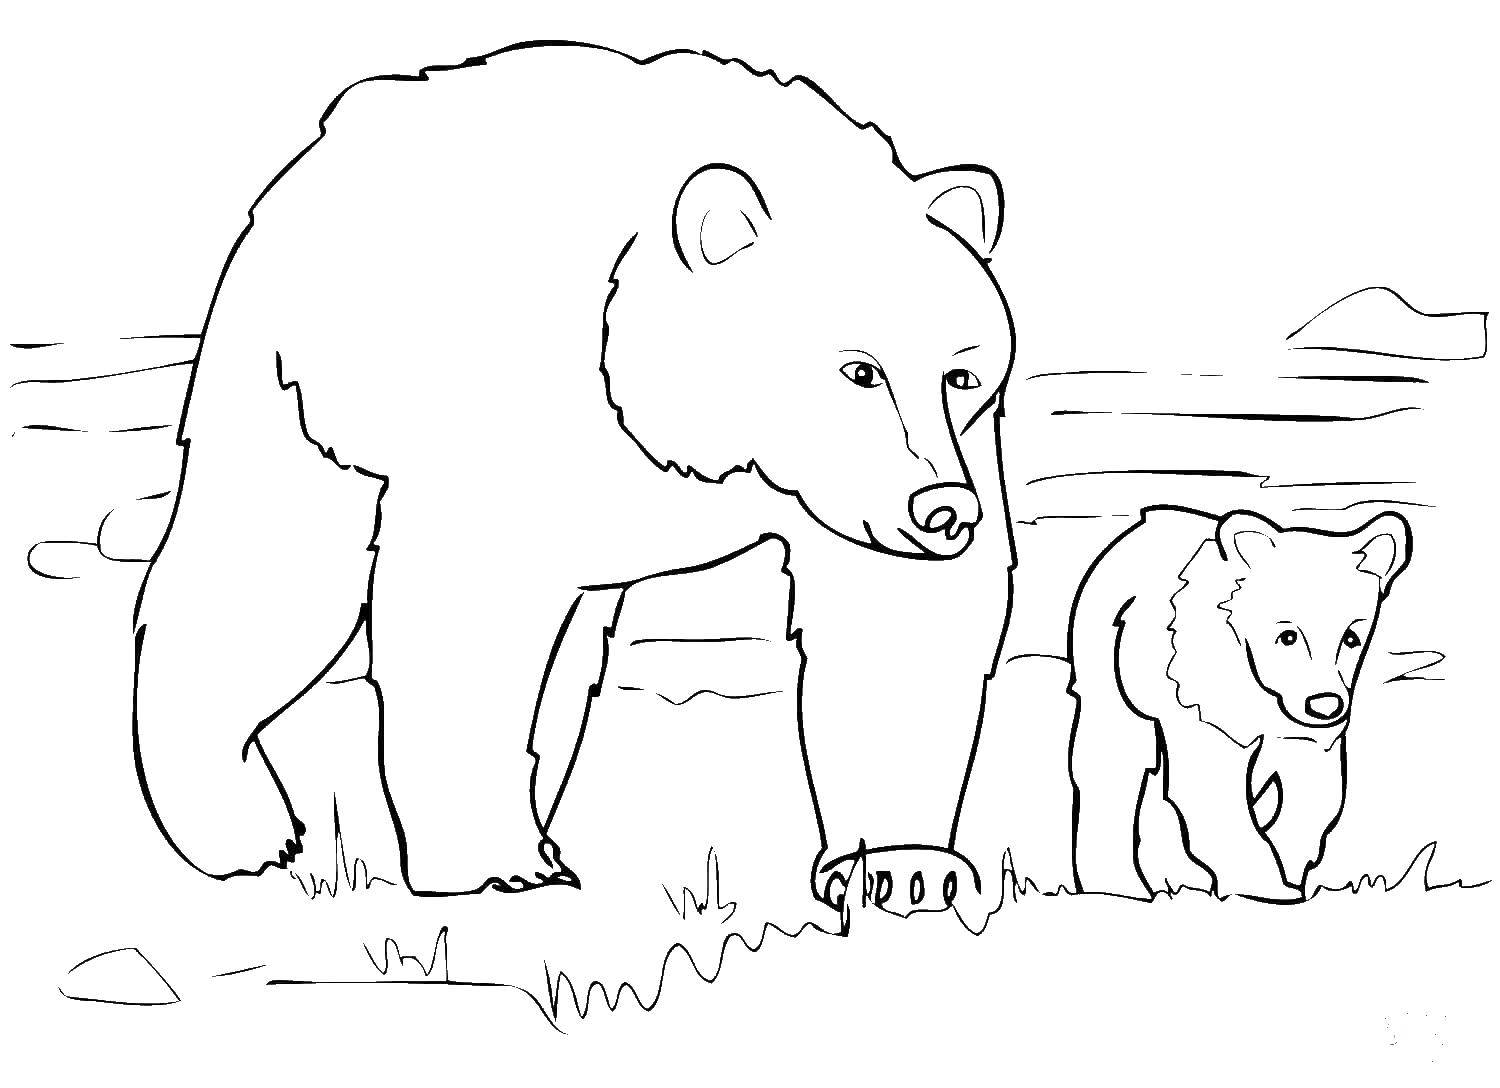 Раскраска медведя и медведицы для детей (медведь, медведица)